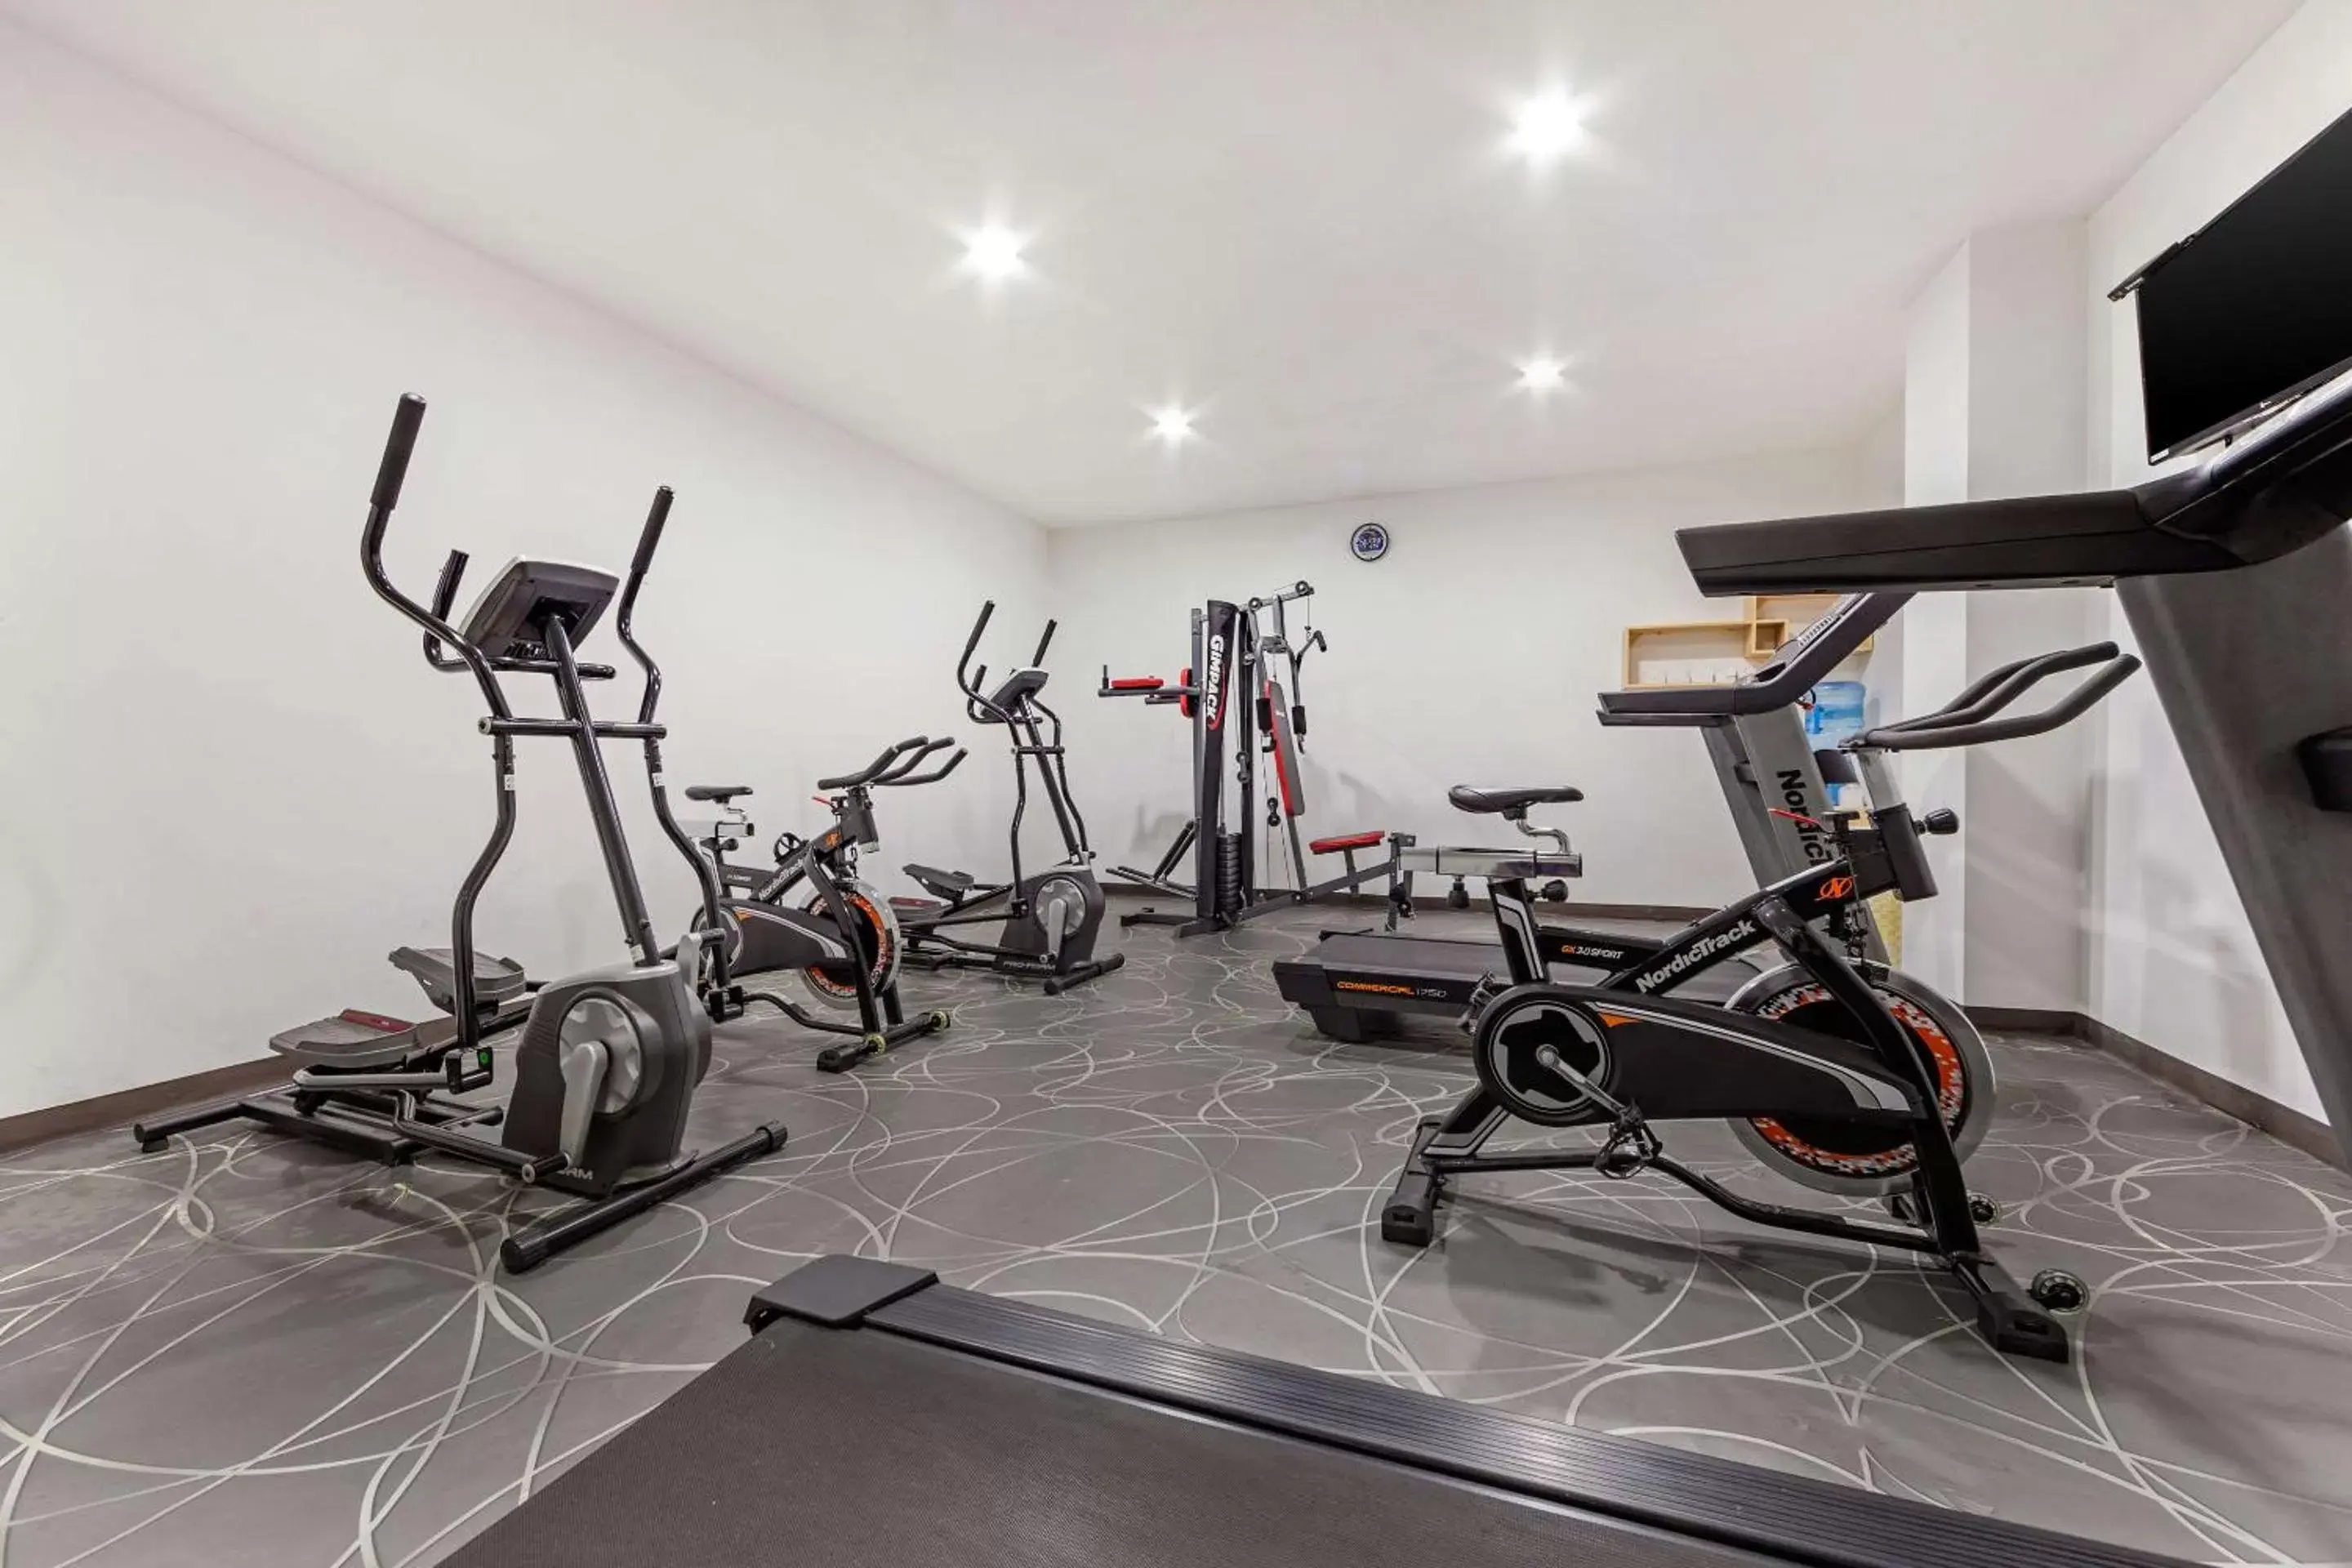 Fitness centre/facilities, Fitness Center/Facilities in Sleep Inn Tuxtla